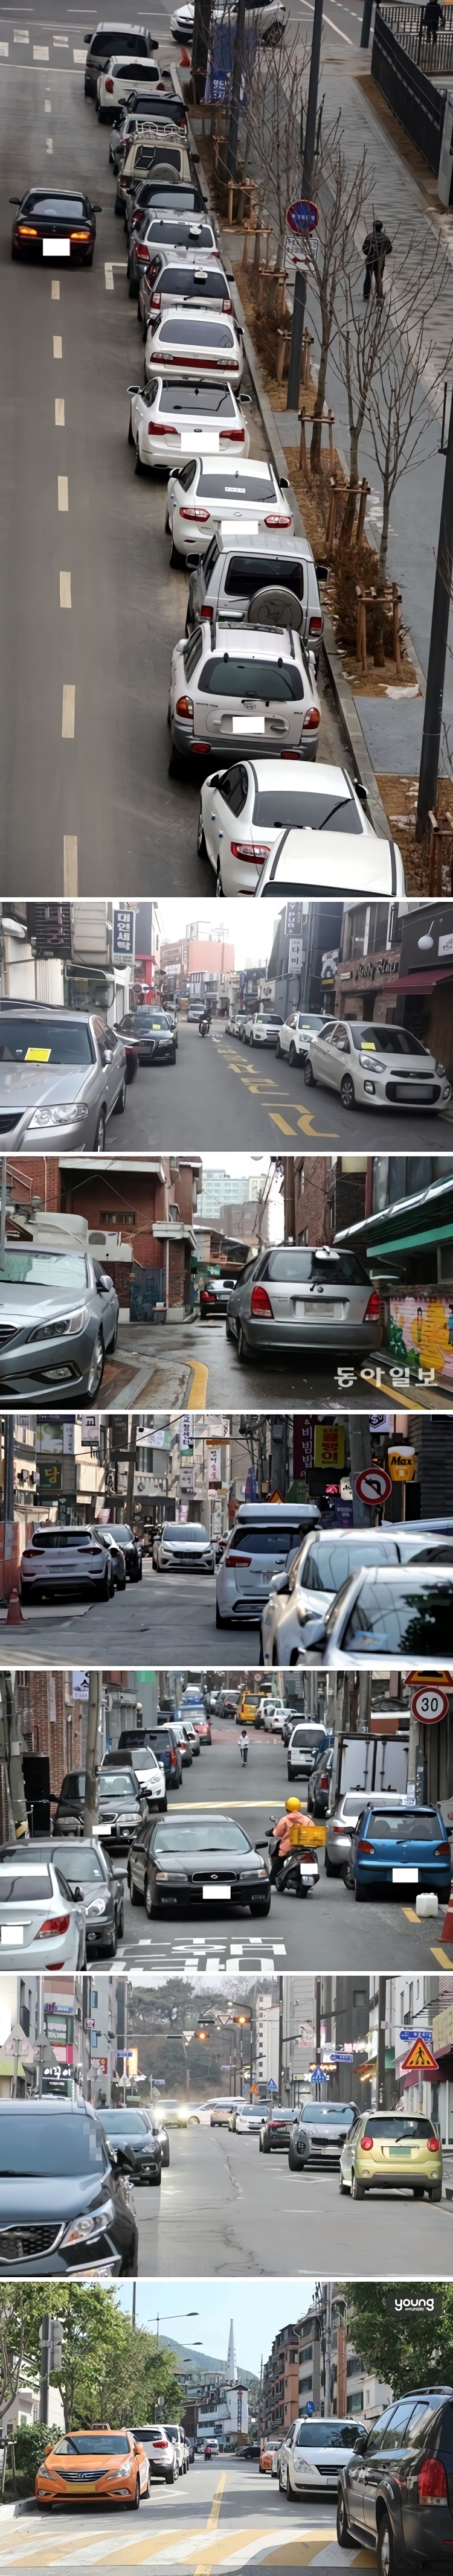 해결이 불가능해보이는 한국 자동차 문제.jpg